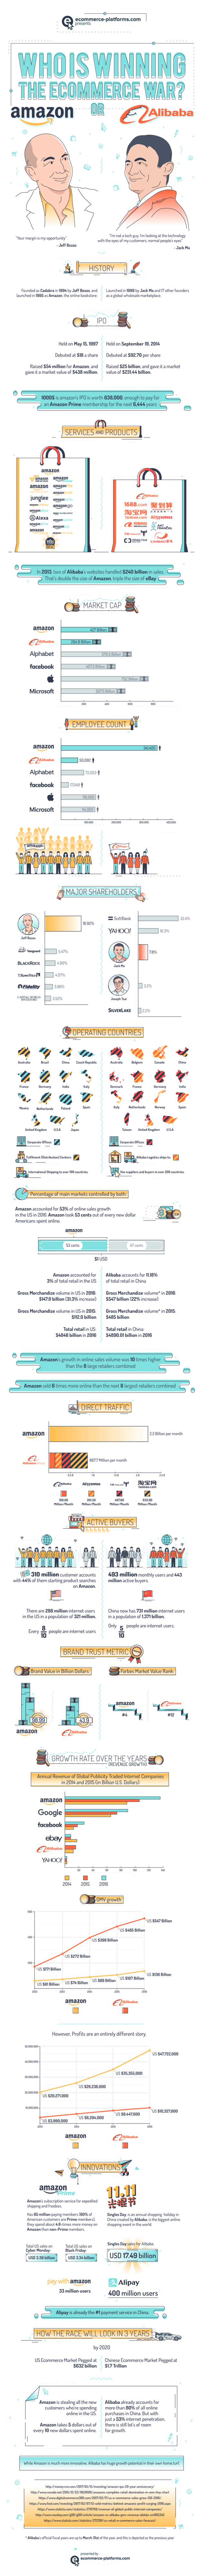 Amazon-or-alibaba-ecommerce-war-infographic